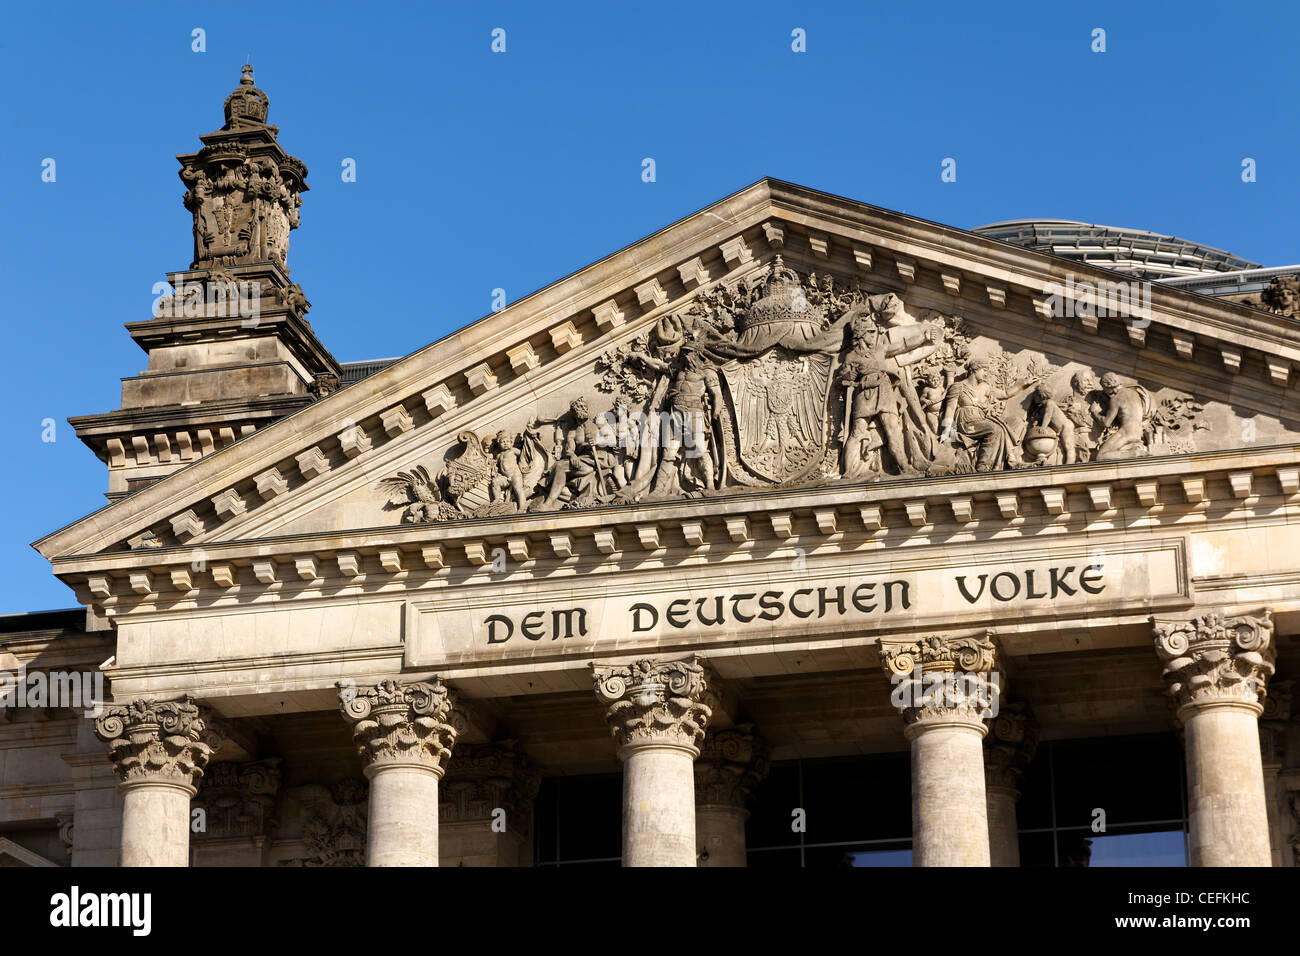 Lettere per il parlamento tedesco edificio, il palazzo del Reichstag a Berlino, Germania, leggi "em Deutschen Volke' - per il popolo tedesco. Foto Stock